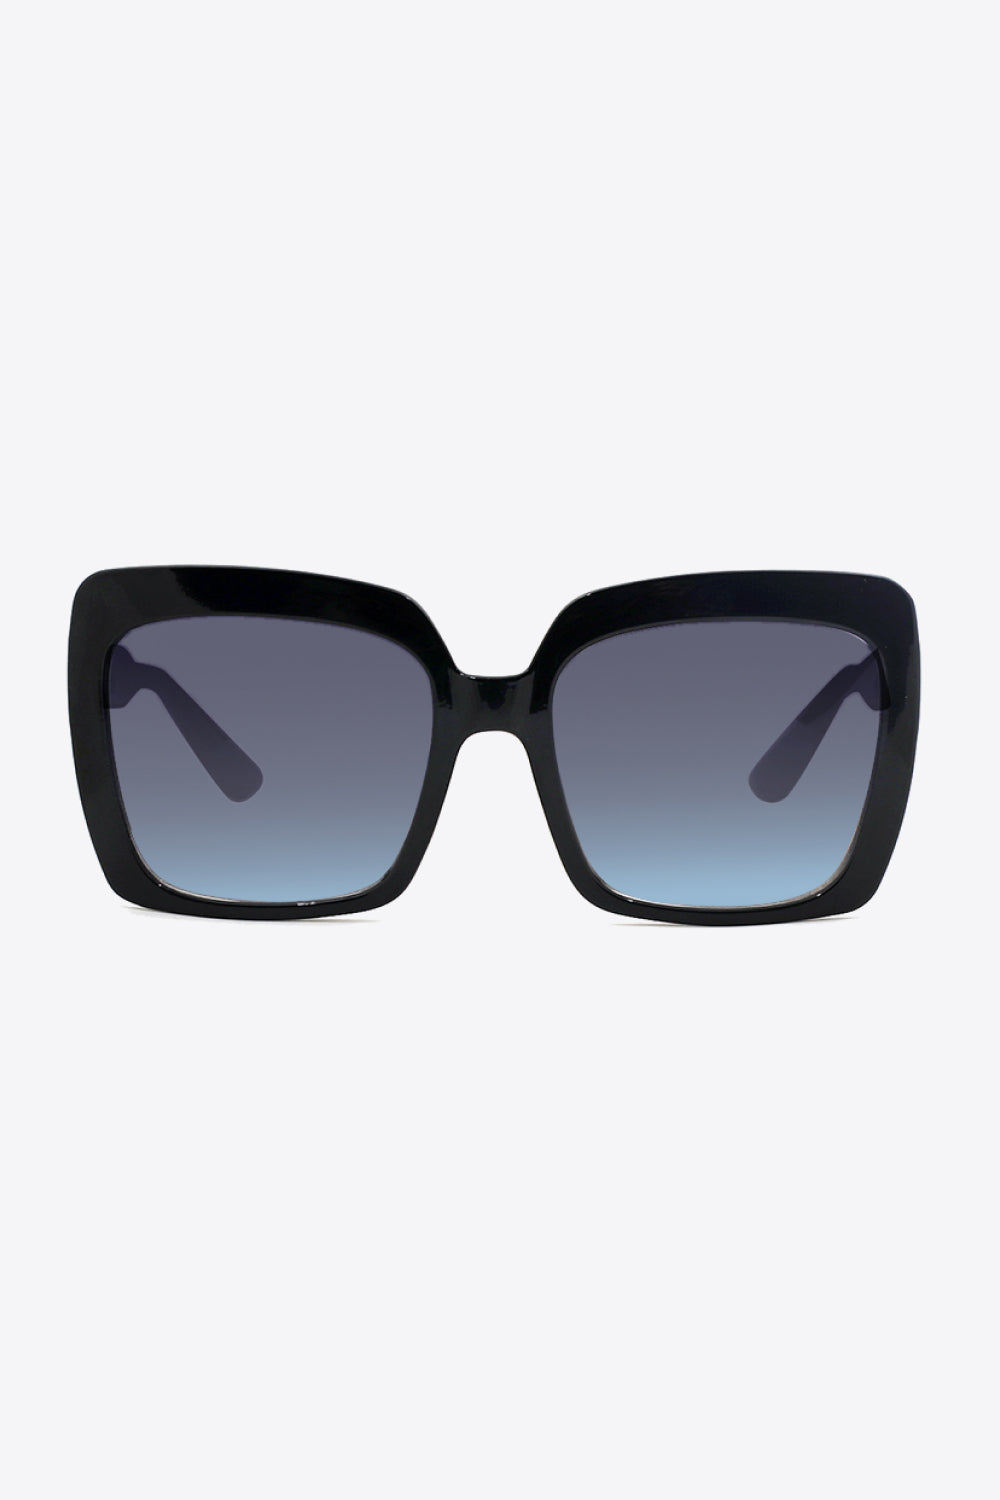 Square Full Rim Sunglasses apparel & accessories